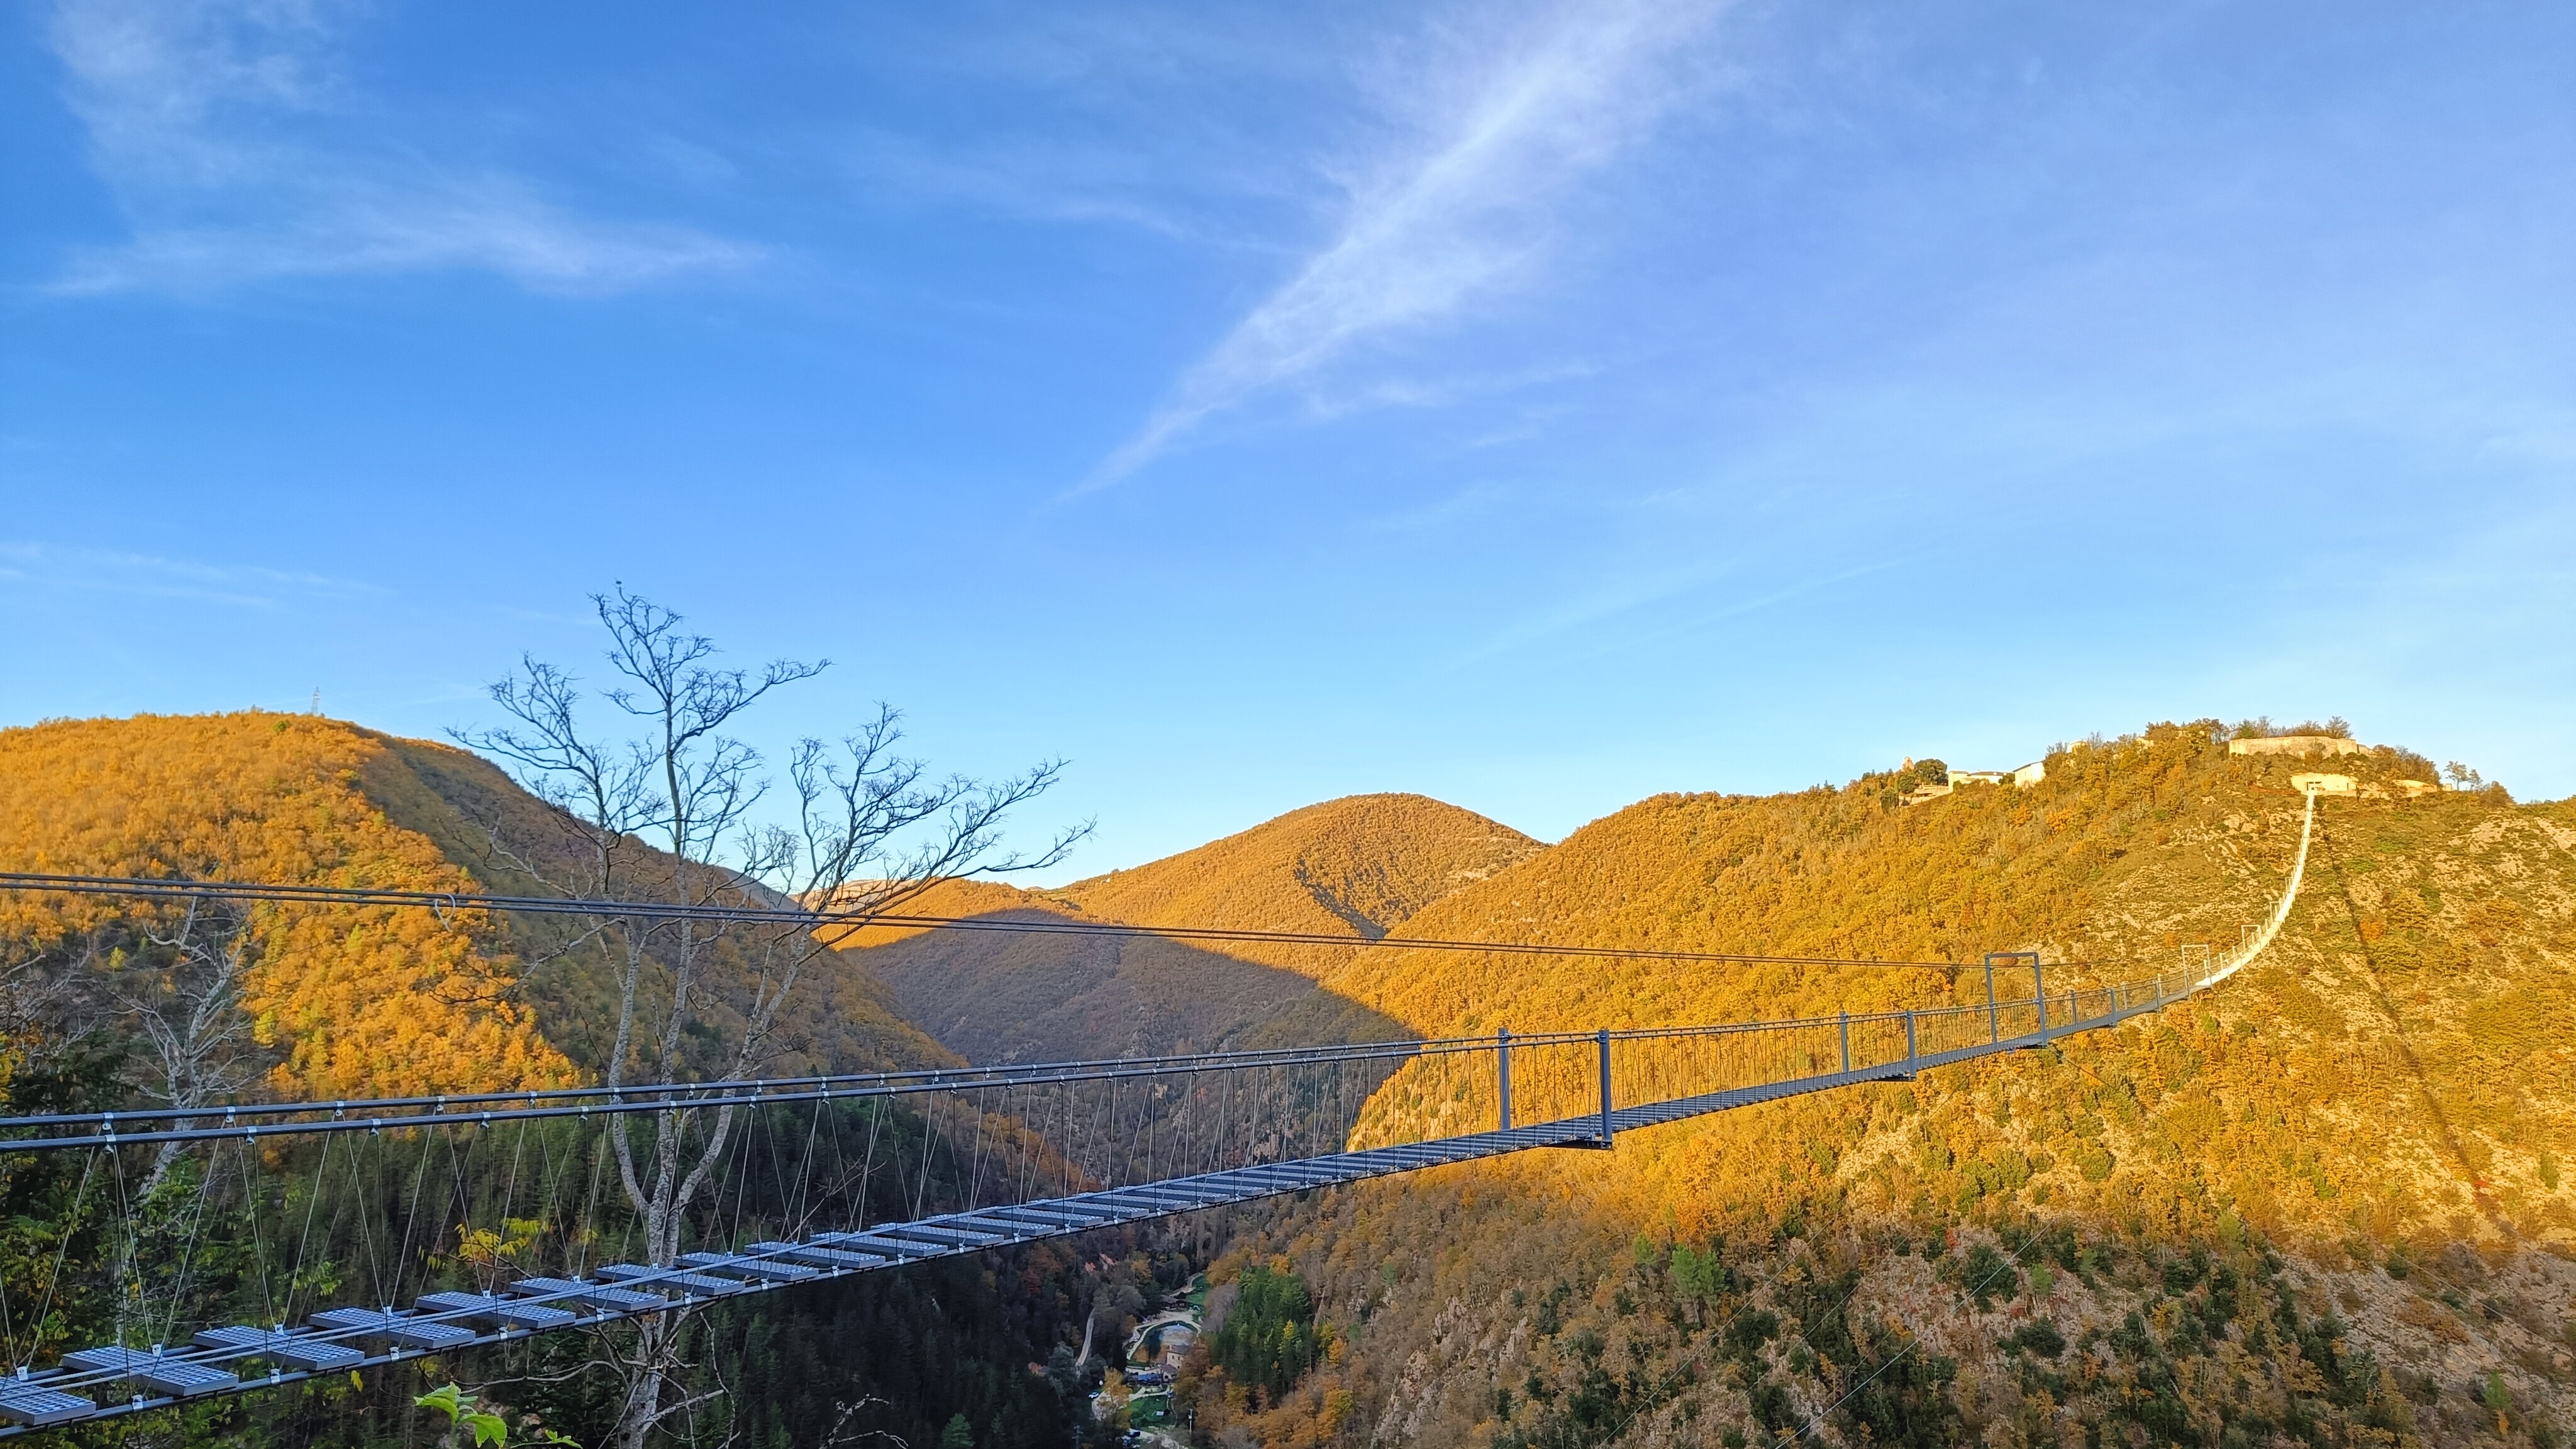 The suspension bridge of Sellano, a very old idea